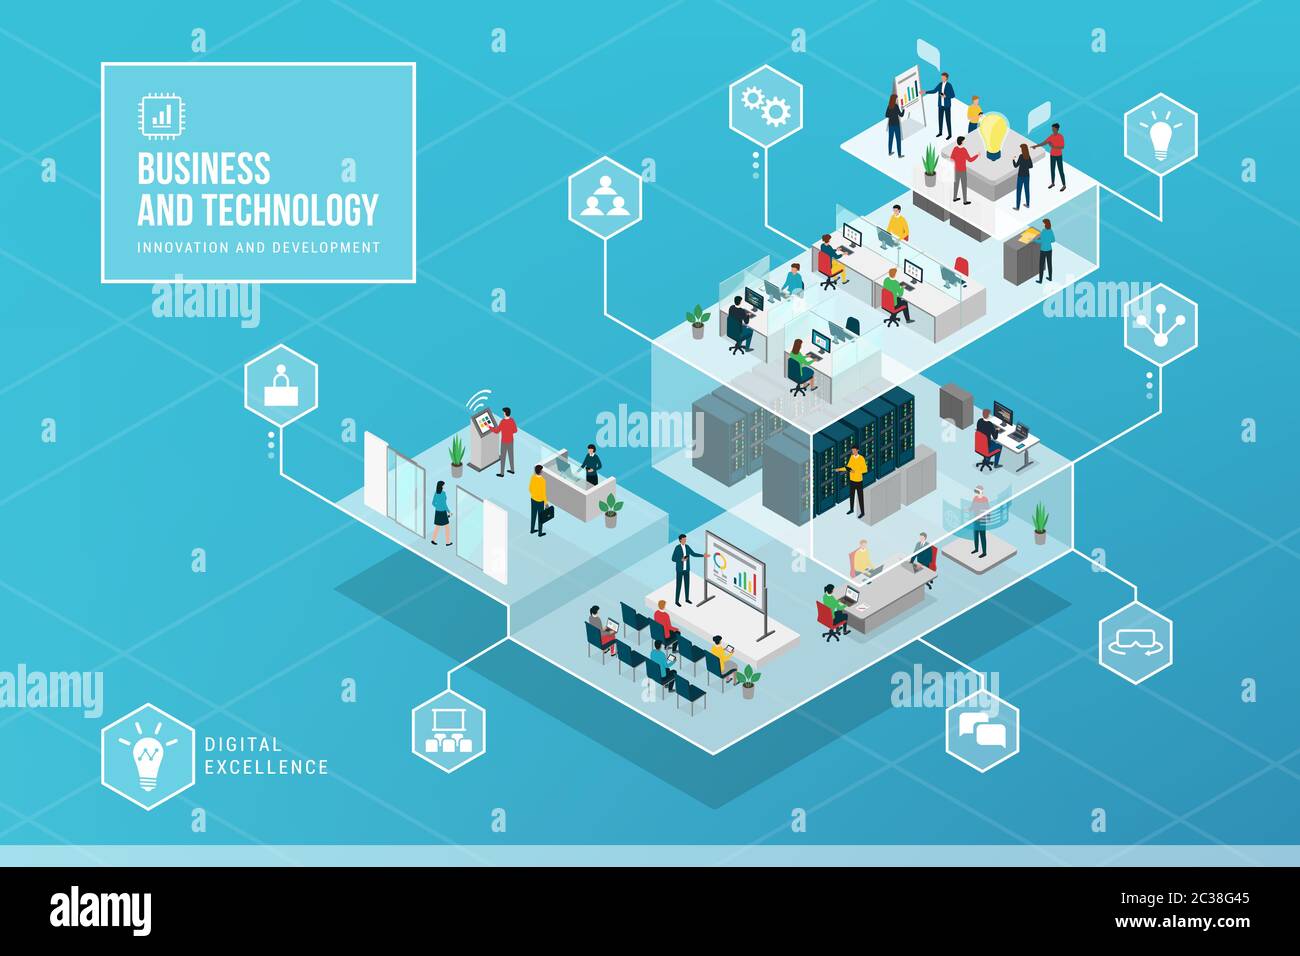 Business Innovation und Technologie isometrische Infografik: Technologische Innovation und Aufgaben in einem Unternehmens-IT-Unternehmen Stock Vektor